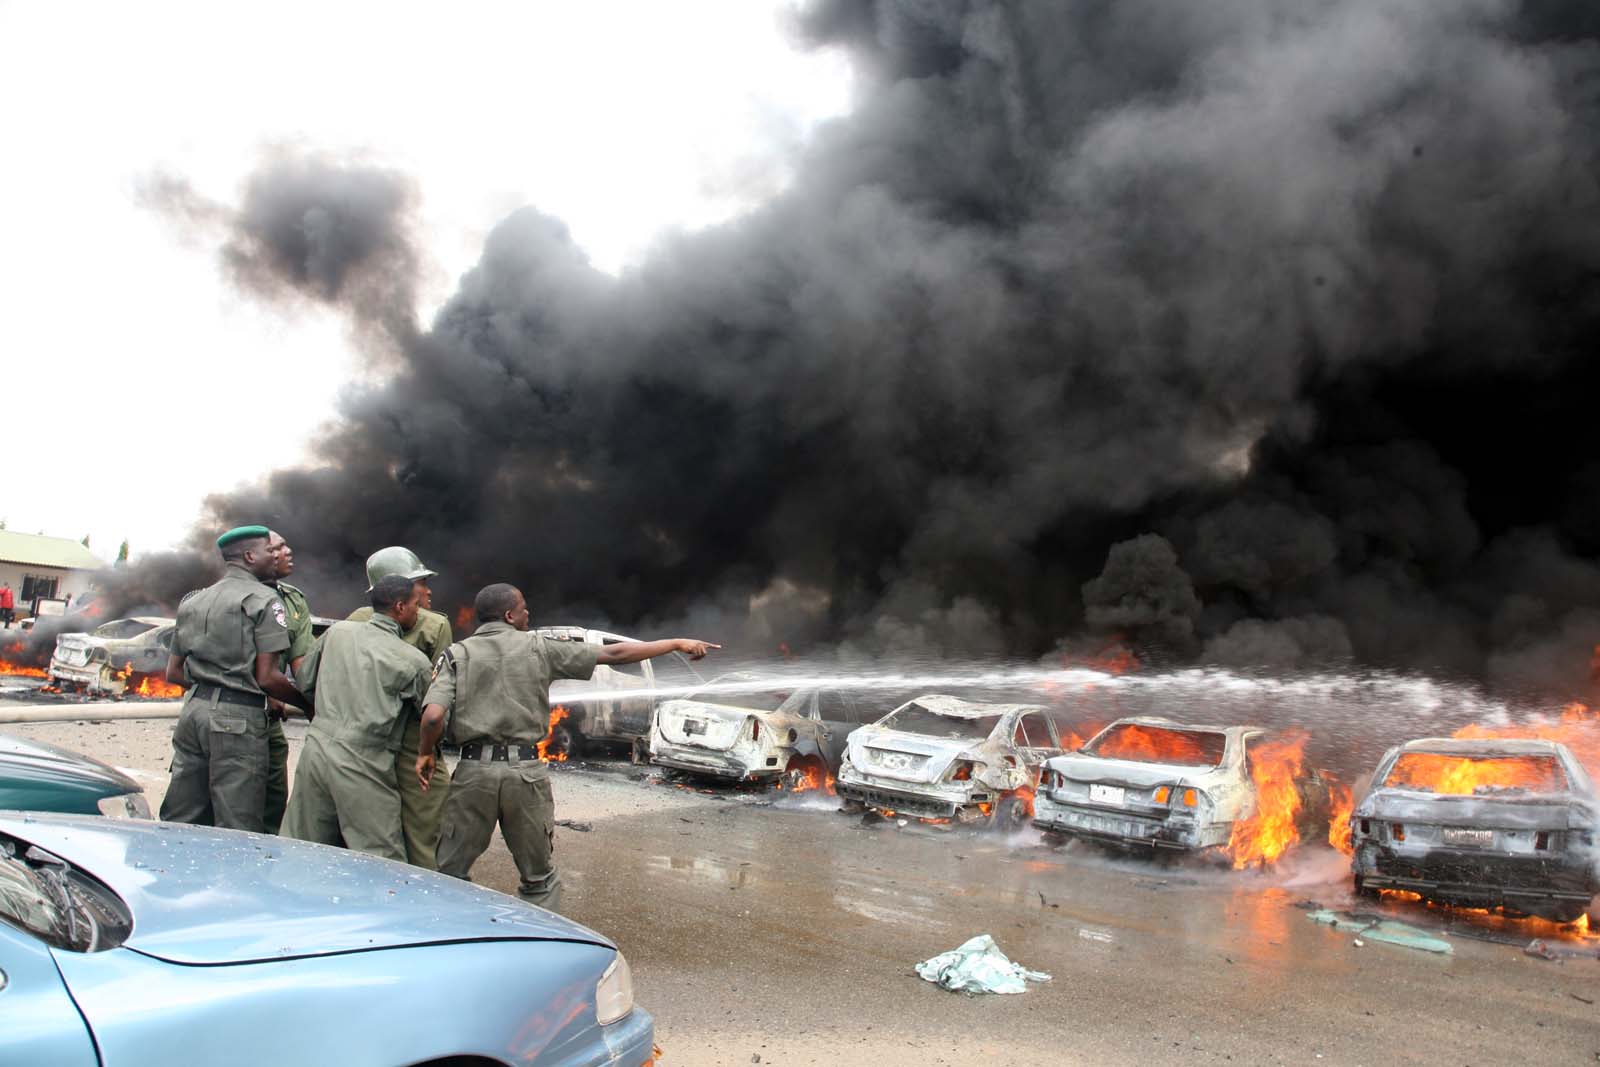 Z parkoviště policejní stanice v nigerijském městě Abuja stoupají kouř a plameny, k zodpovědnosti za tento sebevražedný bombový útok se přihlásila skupina Boko Haram. Autor fotografie Ayemoba Godswill, copyright Demotix (29/4/2013).